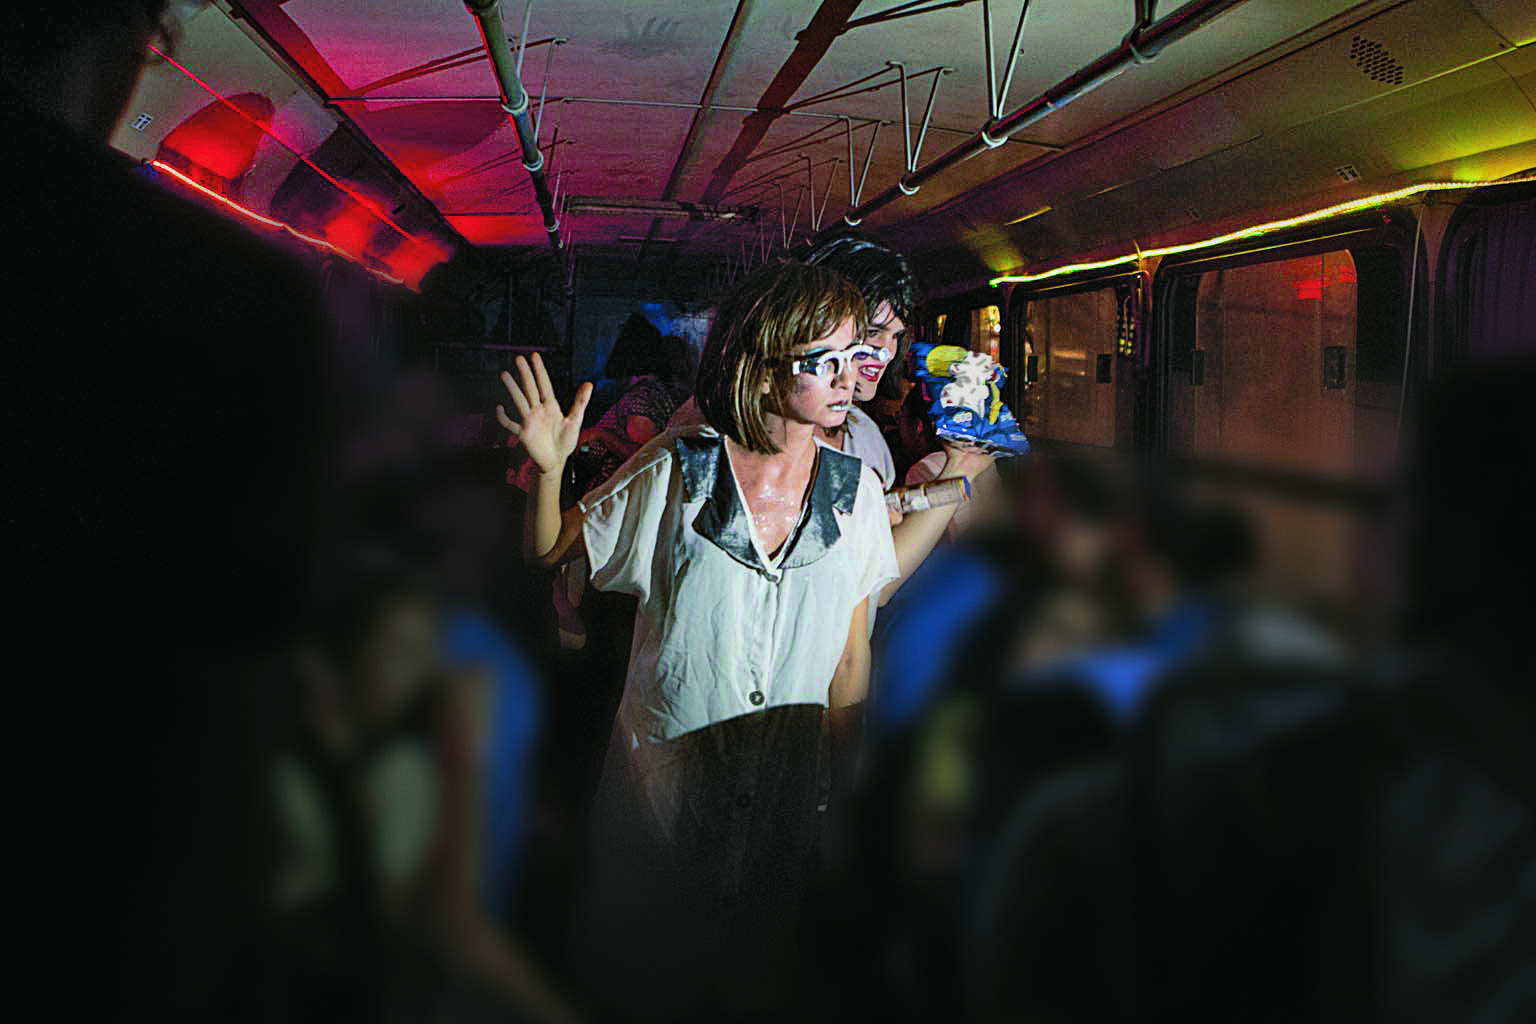 Fotografia. Atrizes interpretam uma cena dentro de um ônibus. Destaque para uma mulher de cabelo loiro e óculos que caminha no corredor do coletivo com objetos nas mãos.